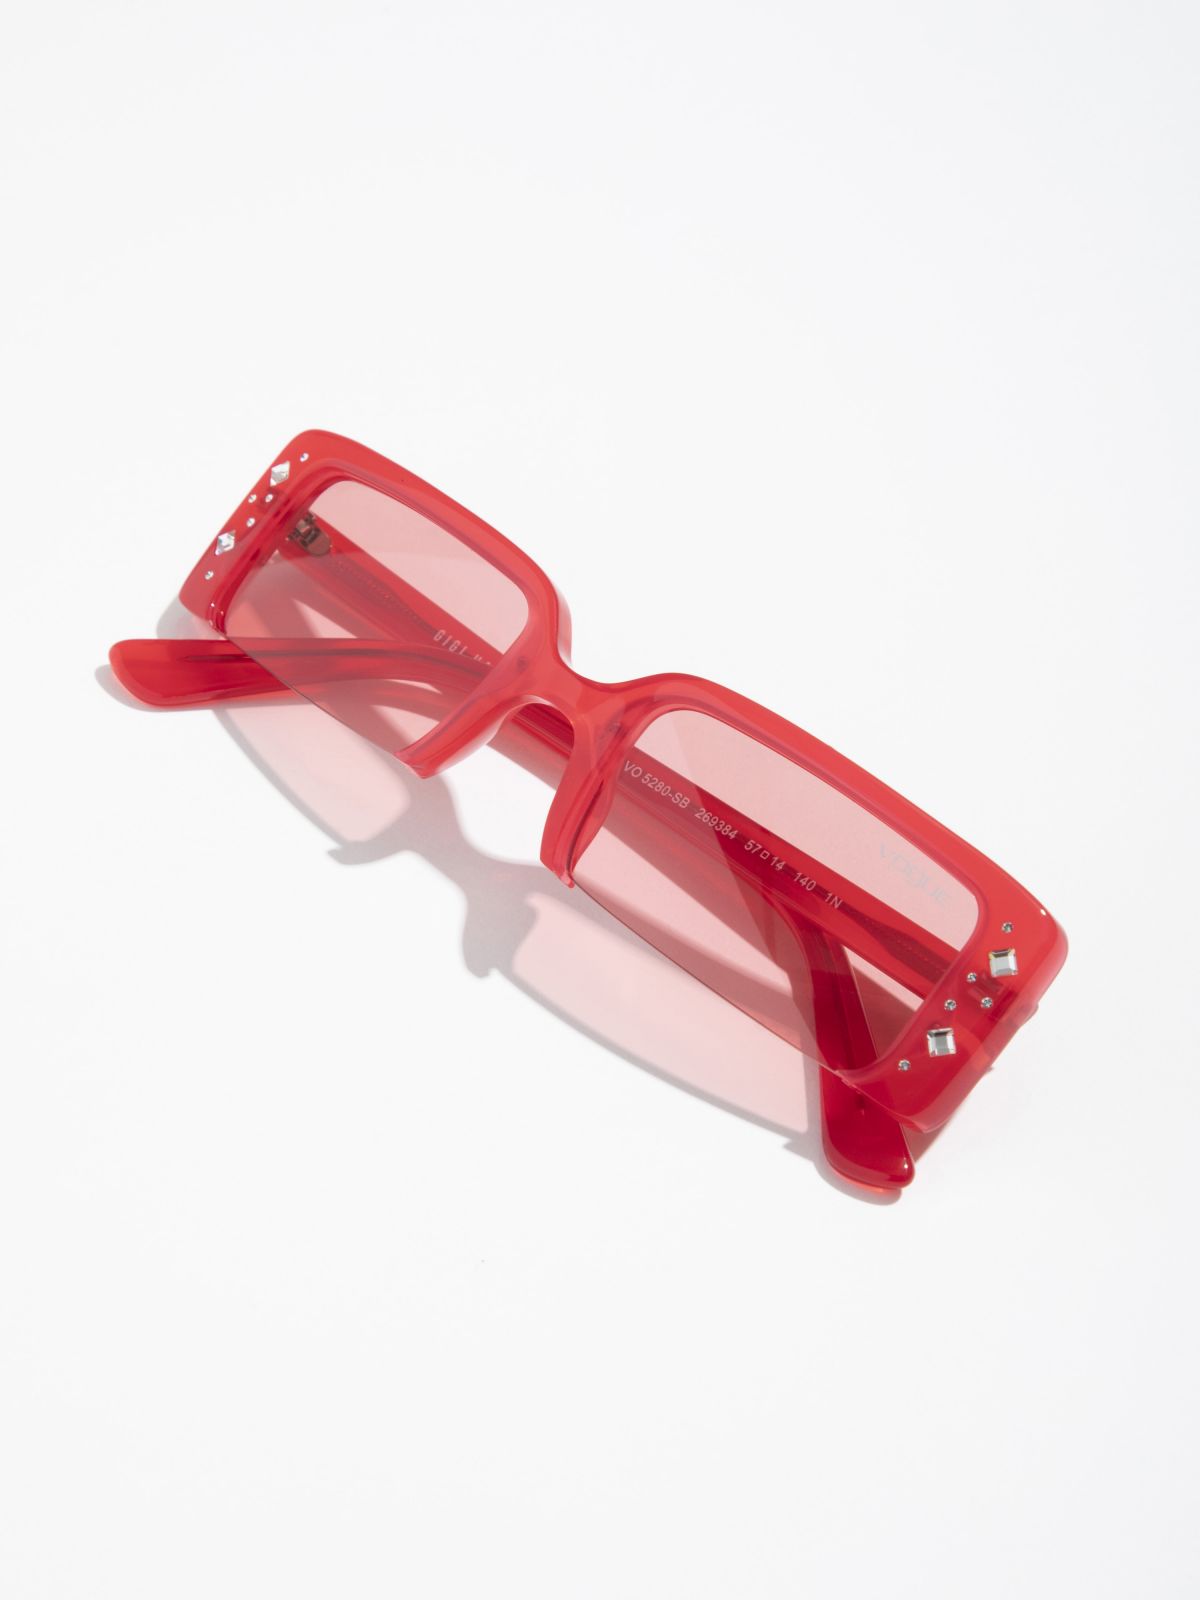  משקפי שמש מלבניים עם מסגרת משובצת Gigi Hadid של VOGUE EYEWEAR